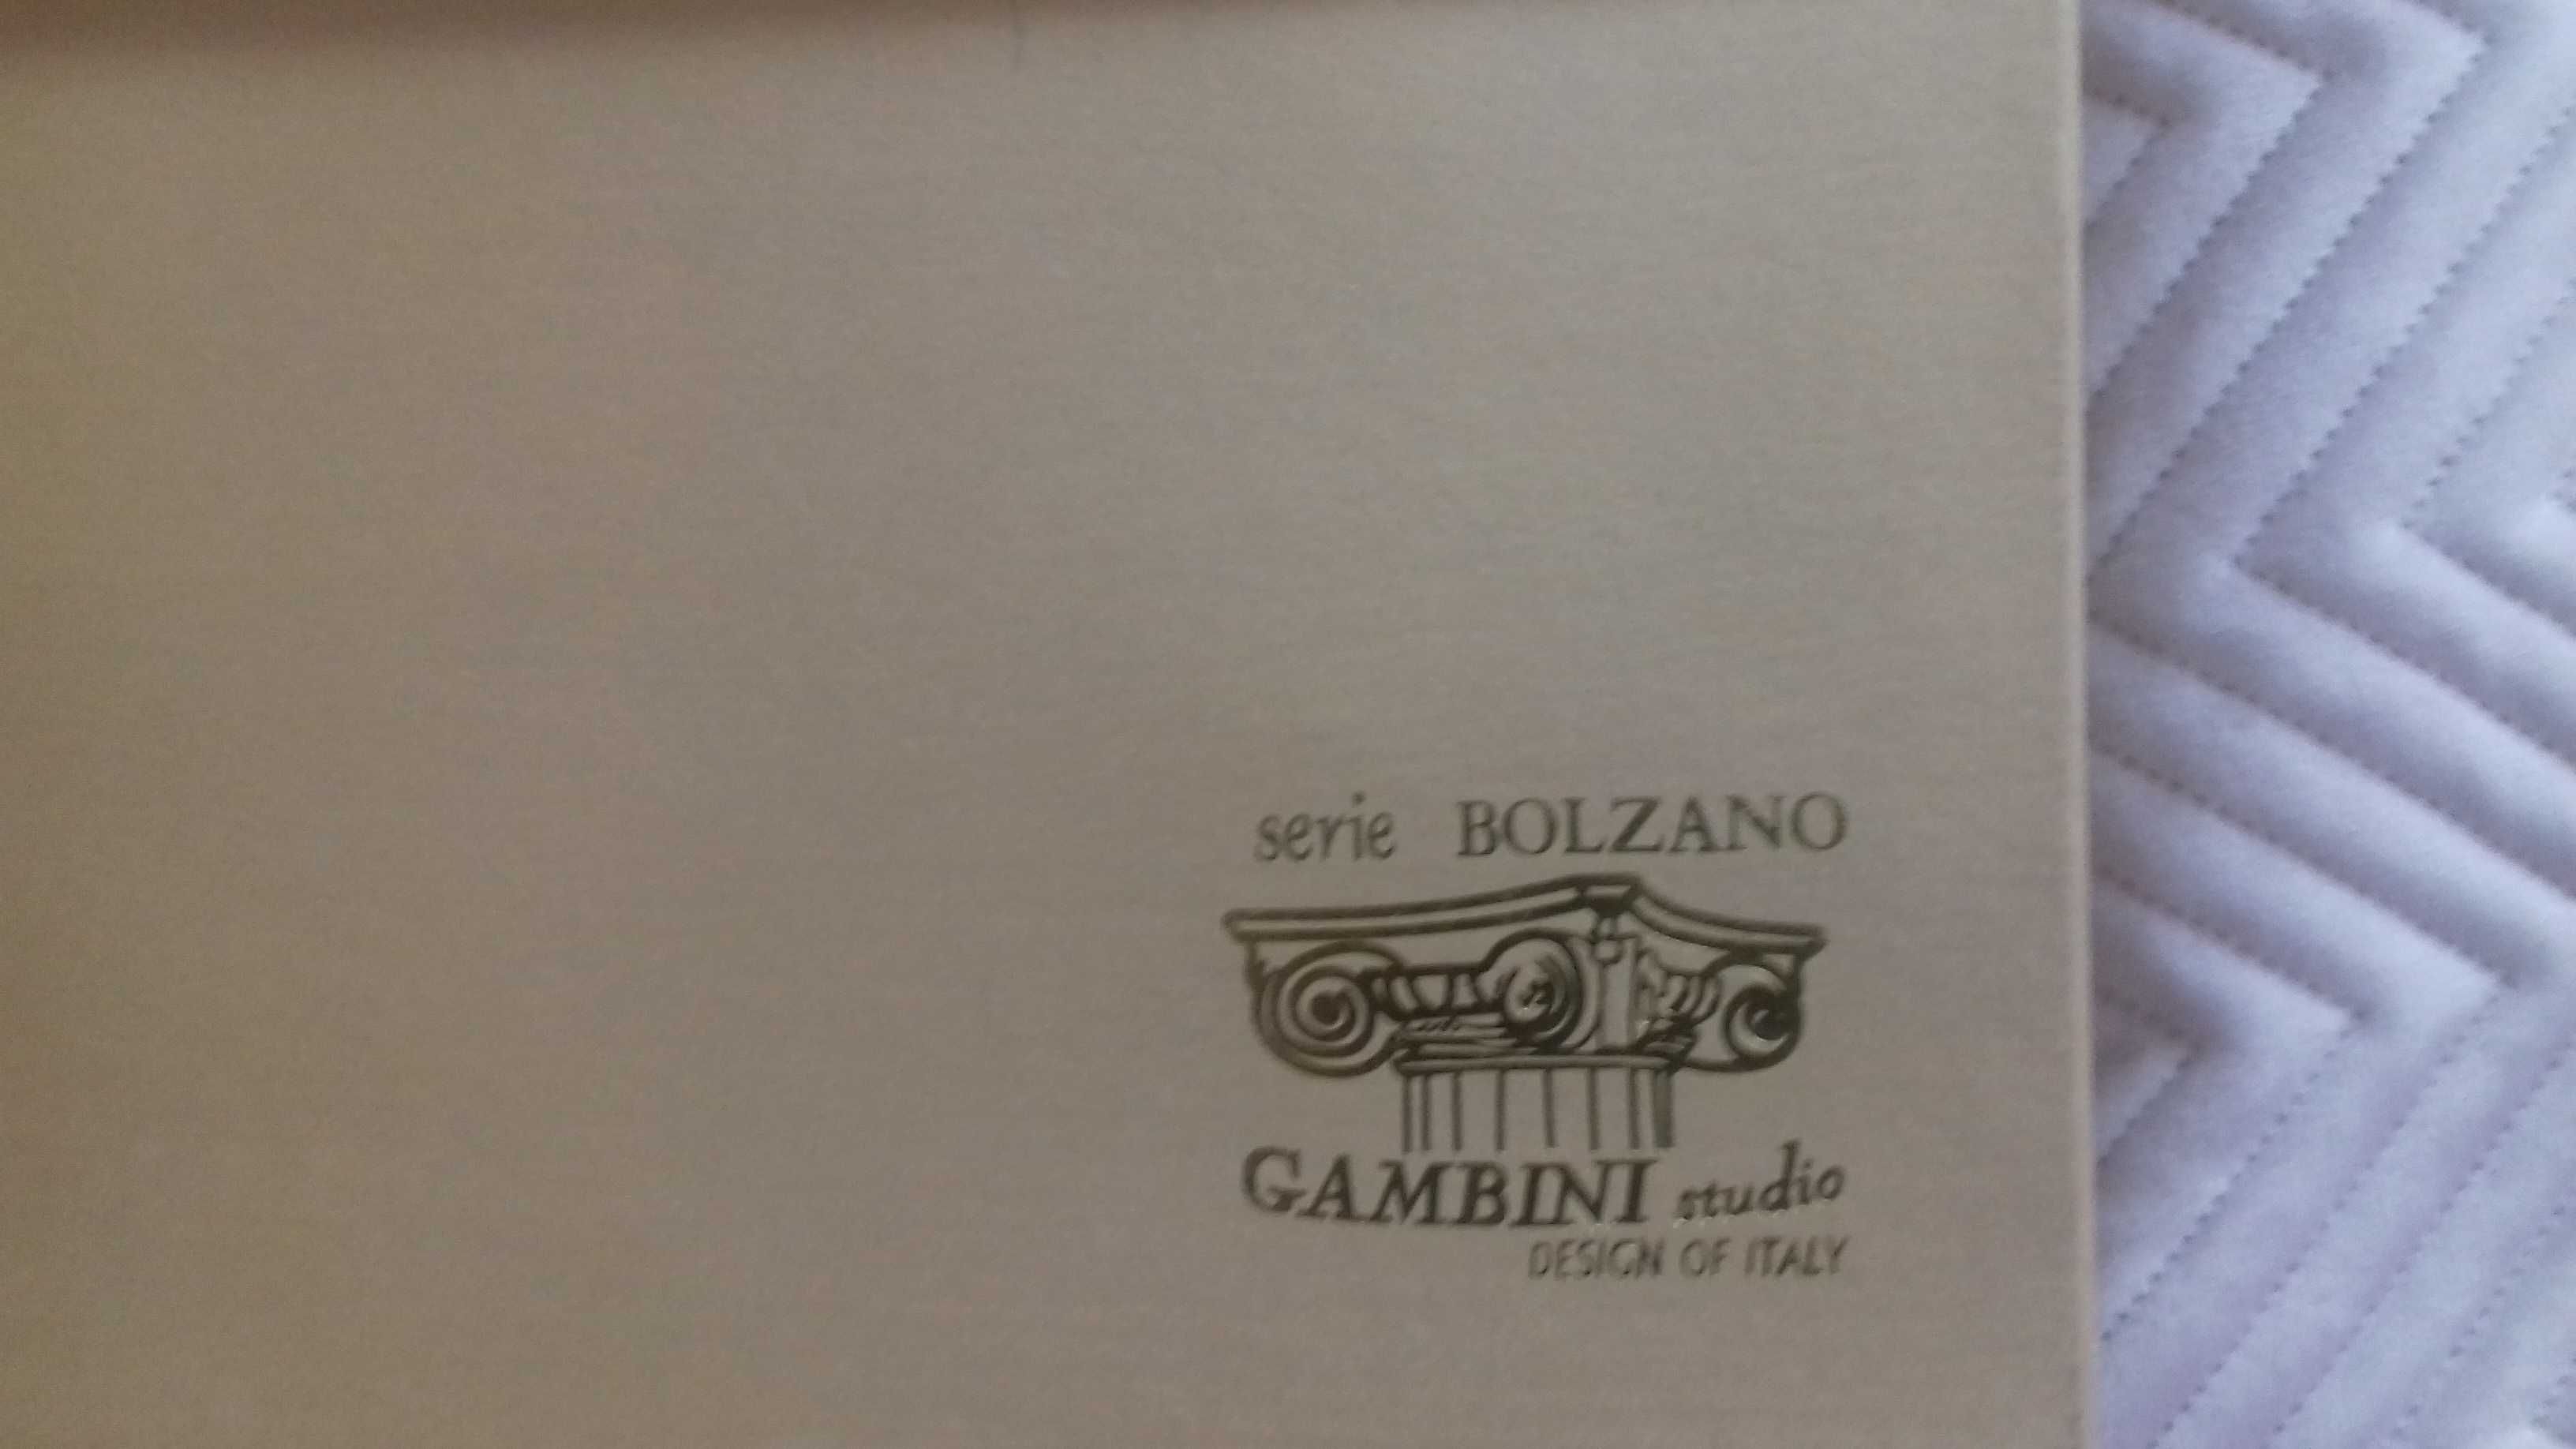 Filizanki do kawy Serie Bolzano